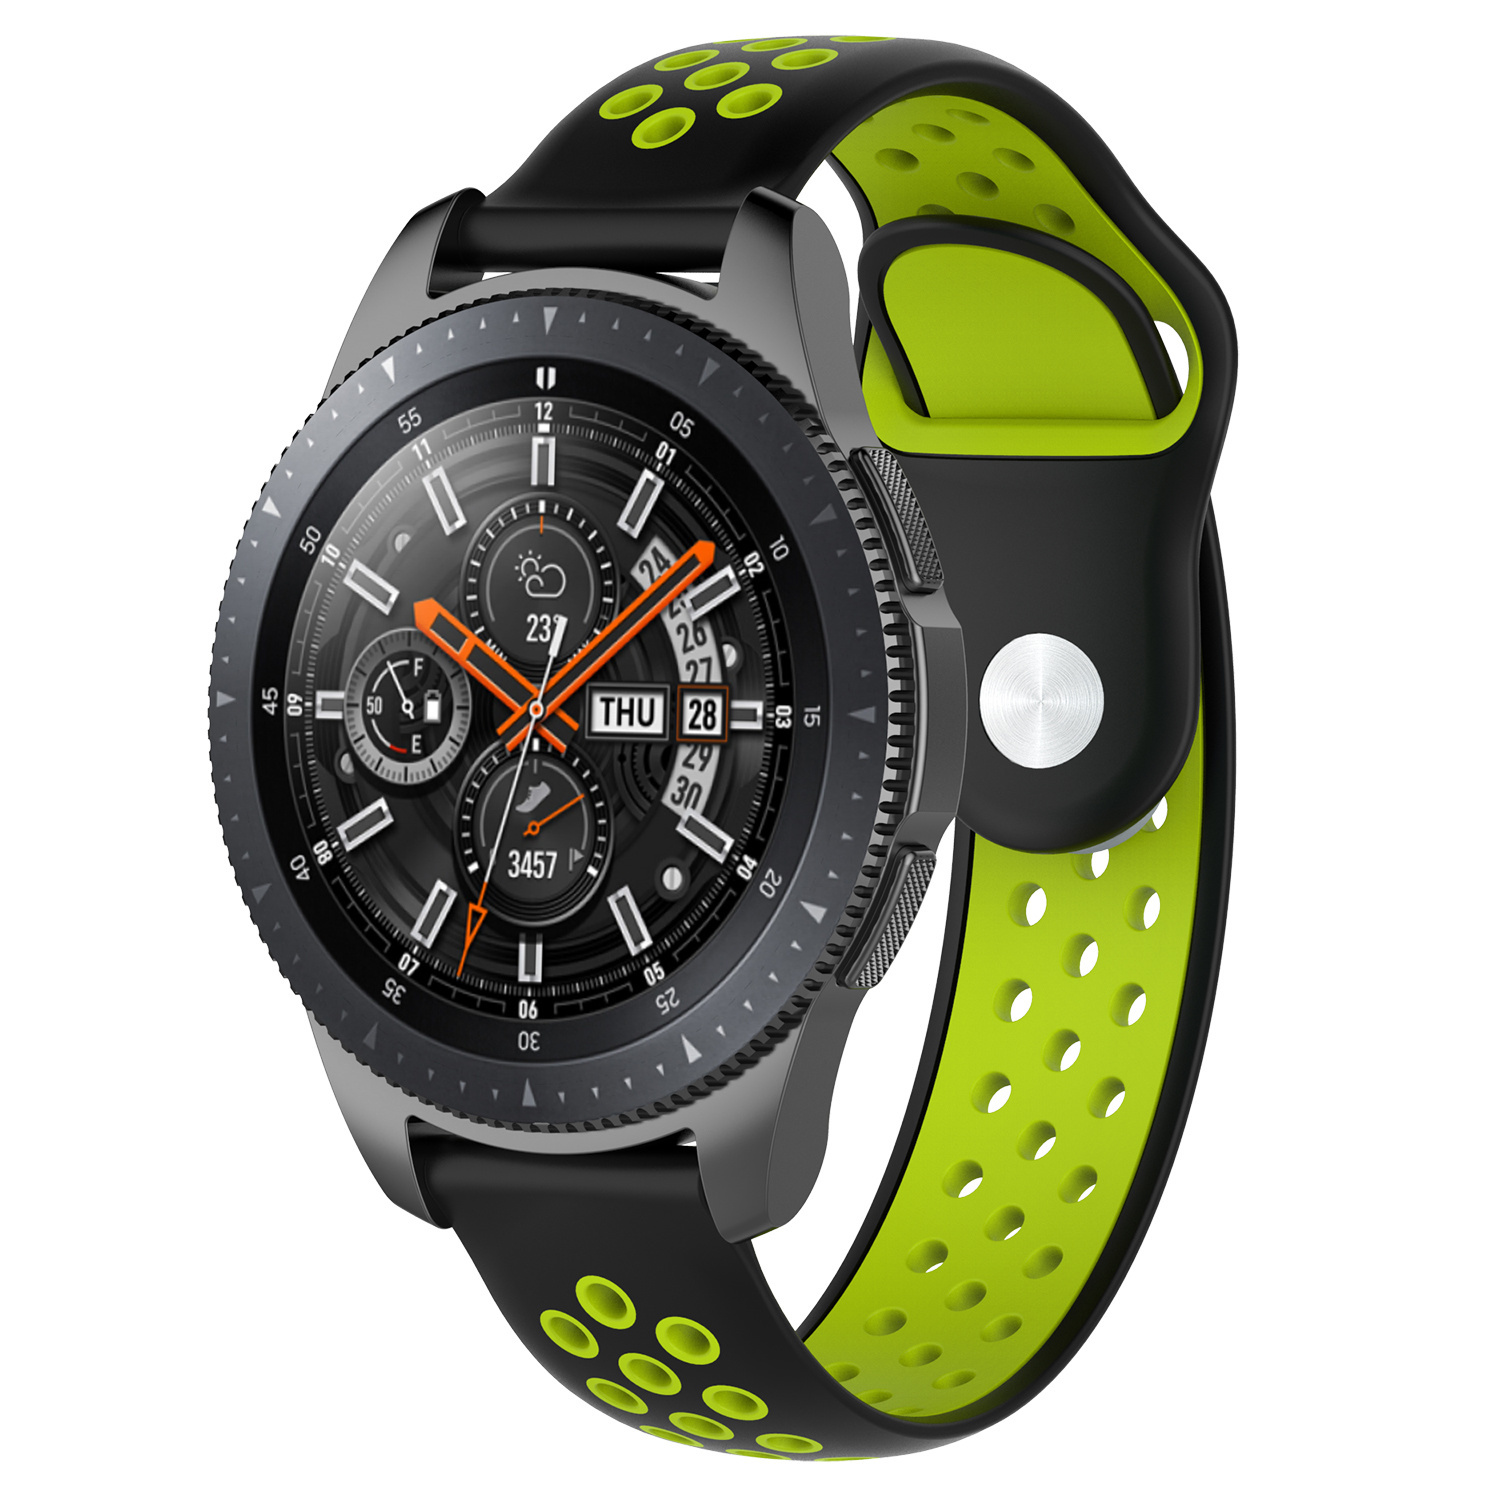 Cinturino doppio sport per Samsung Galaxy Watch - nero verde